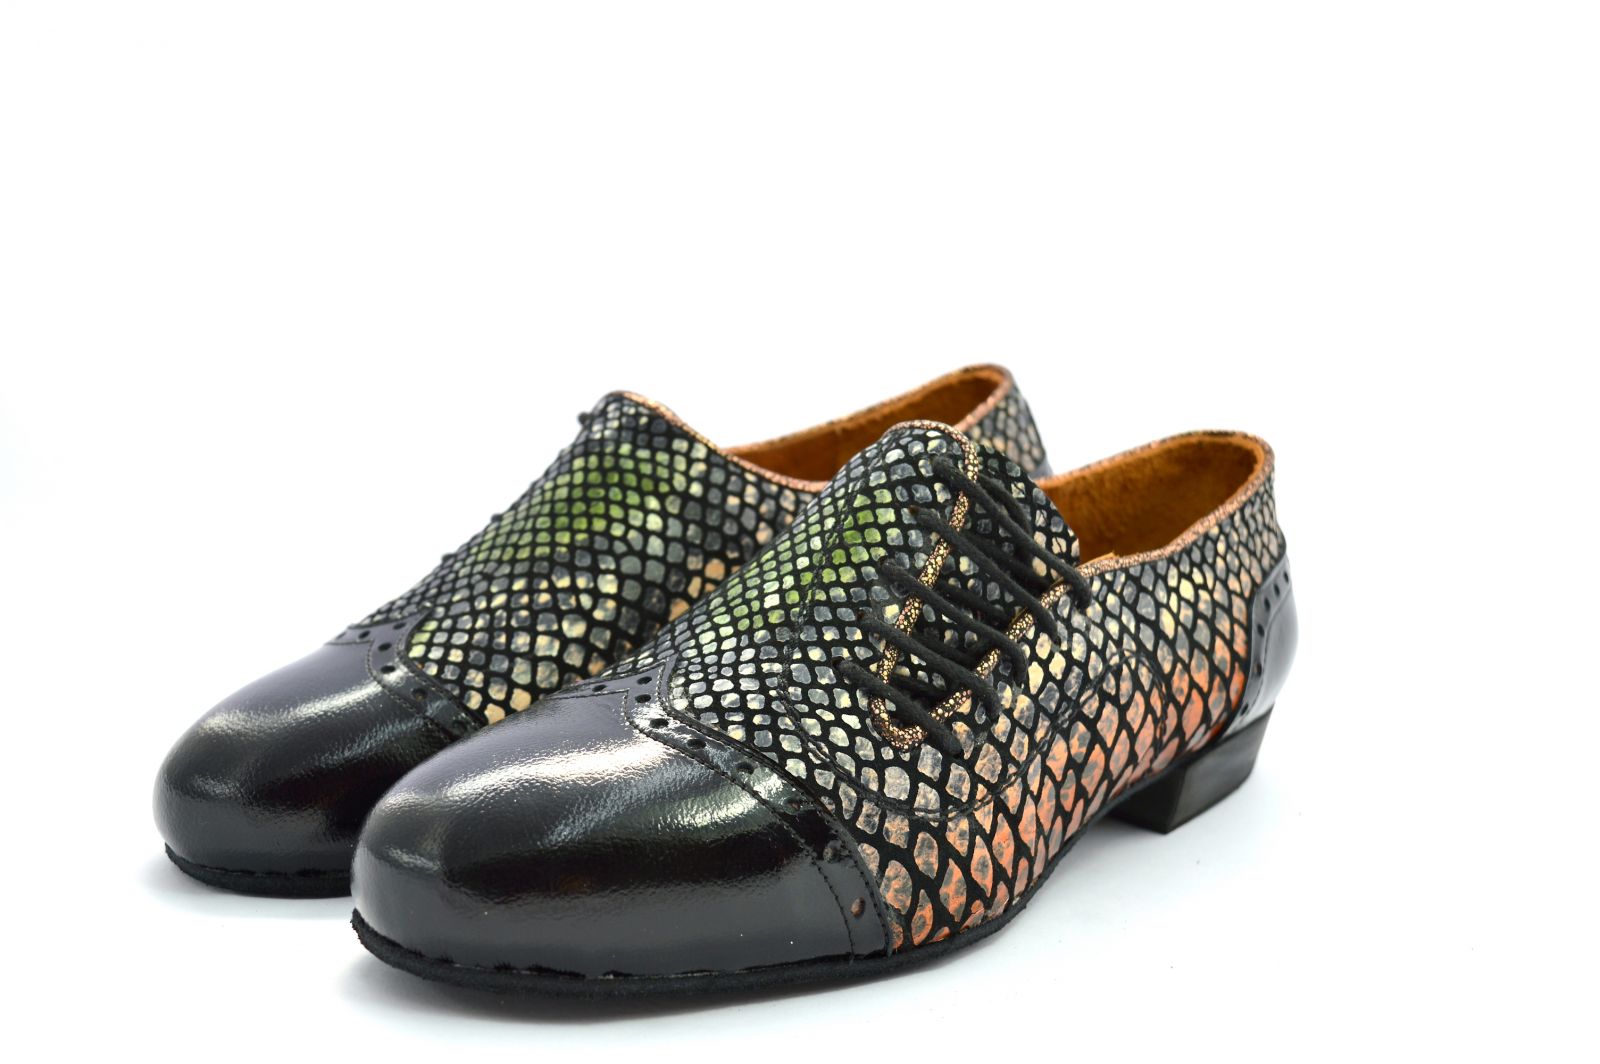 Ανδρικό παπούτσι χορού αργεντίνικου τάνγκο από πολύχρωμο δέρμα φίδι και μαύρο λουστρίνι